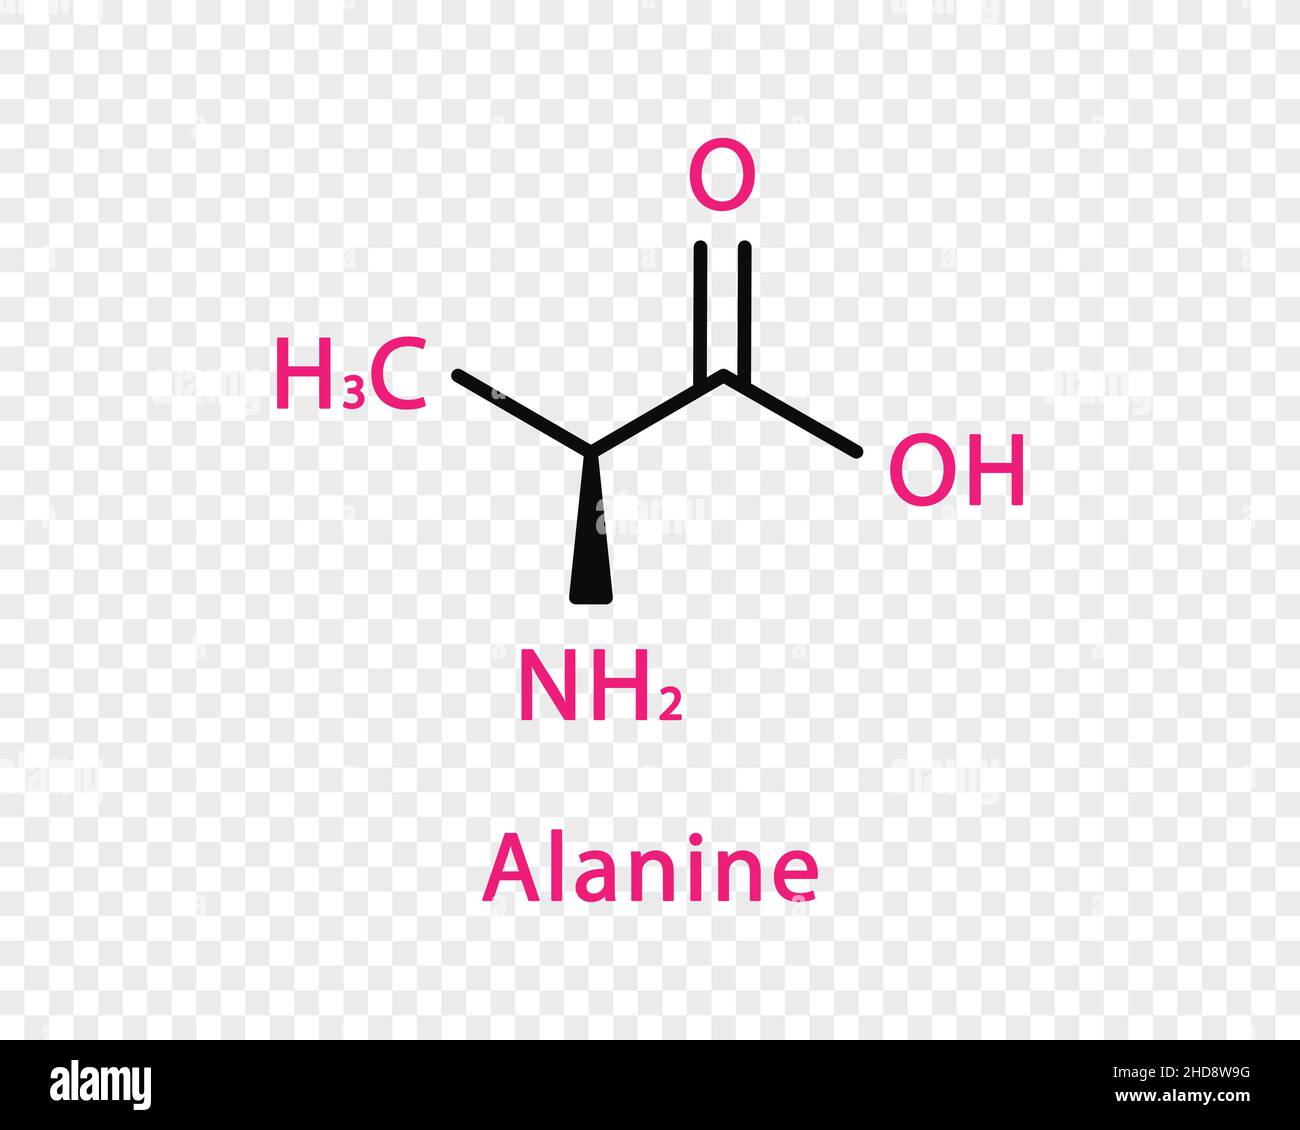 Formula chimica dell'alanina. Formula chimica strutturale dell'alanina isolata su sfondo trasparente. Illustrazione Vettoriale